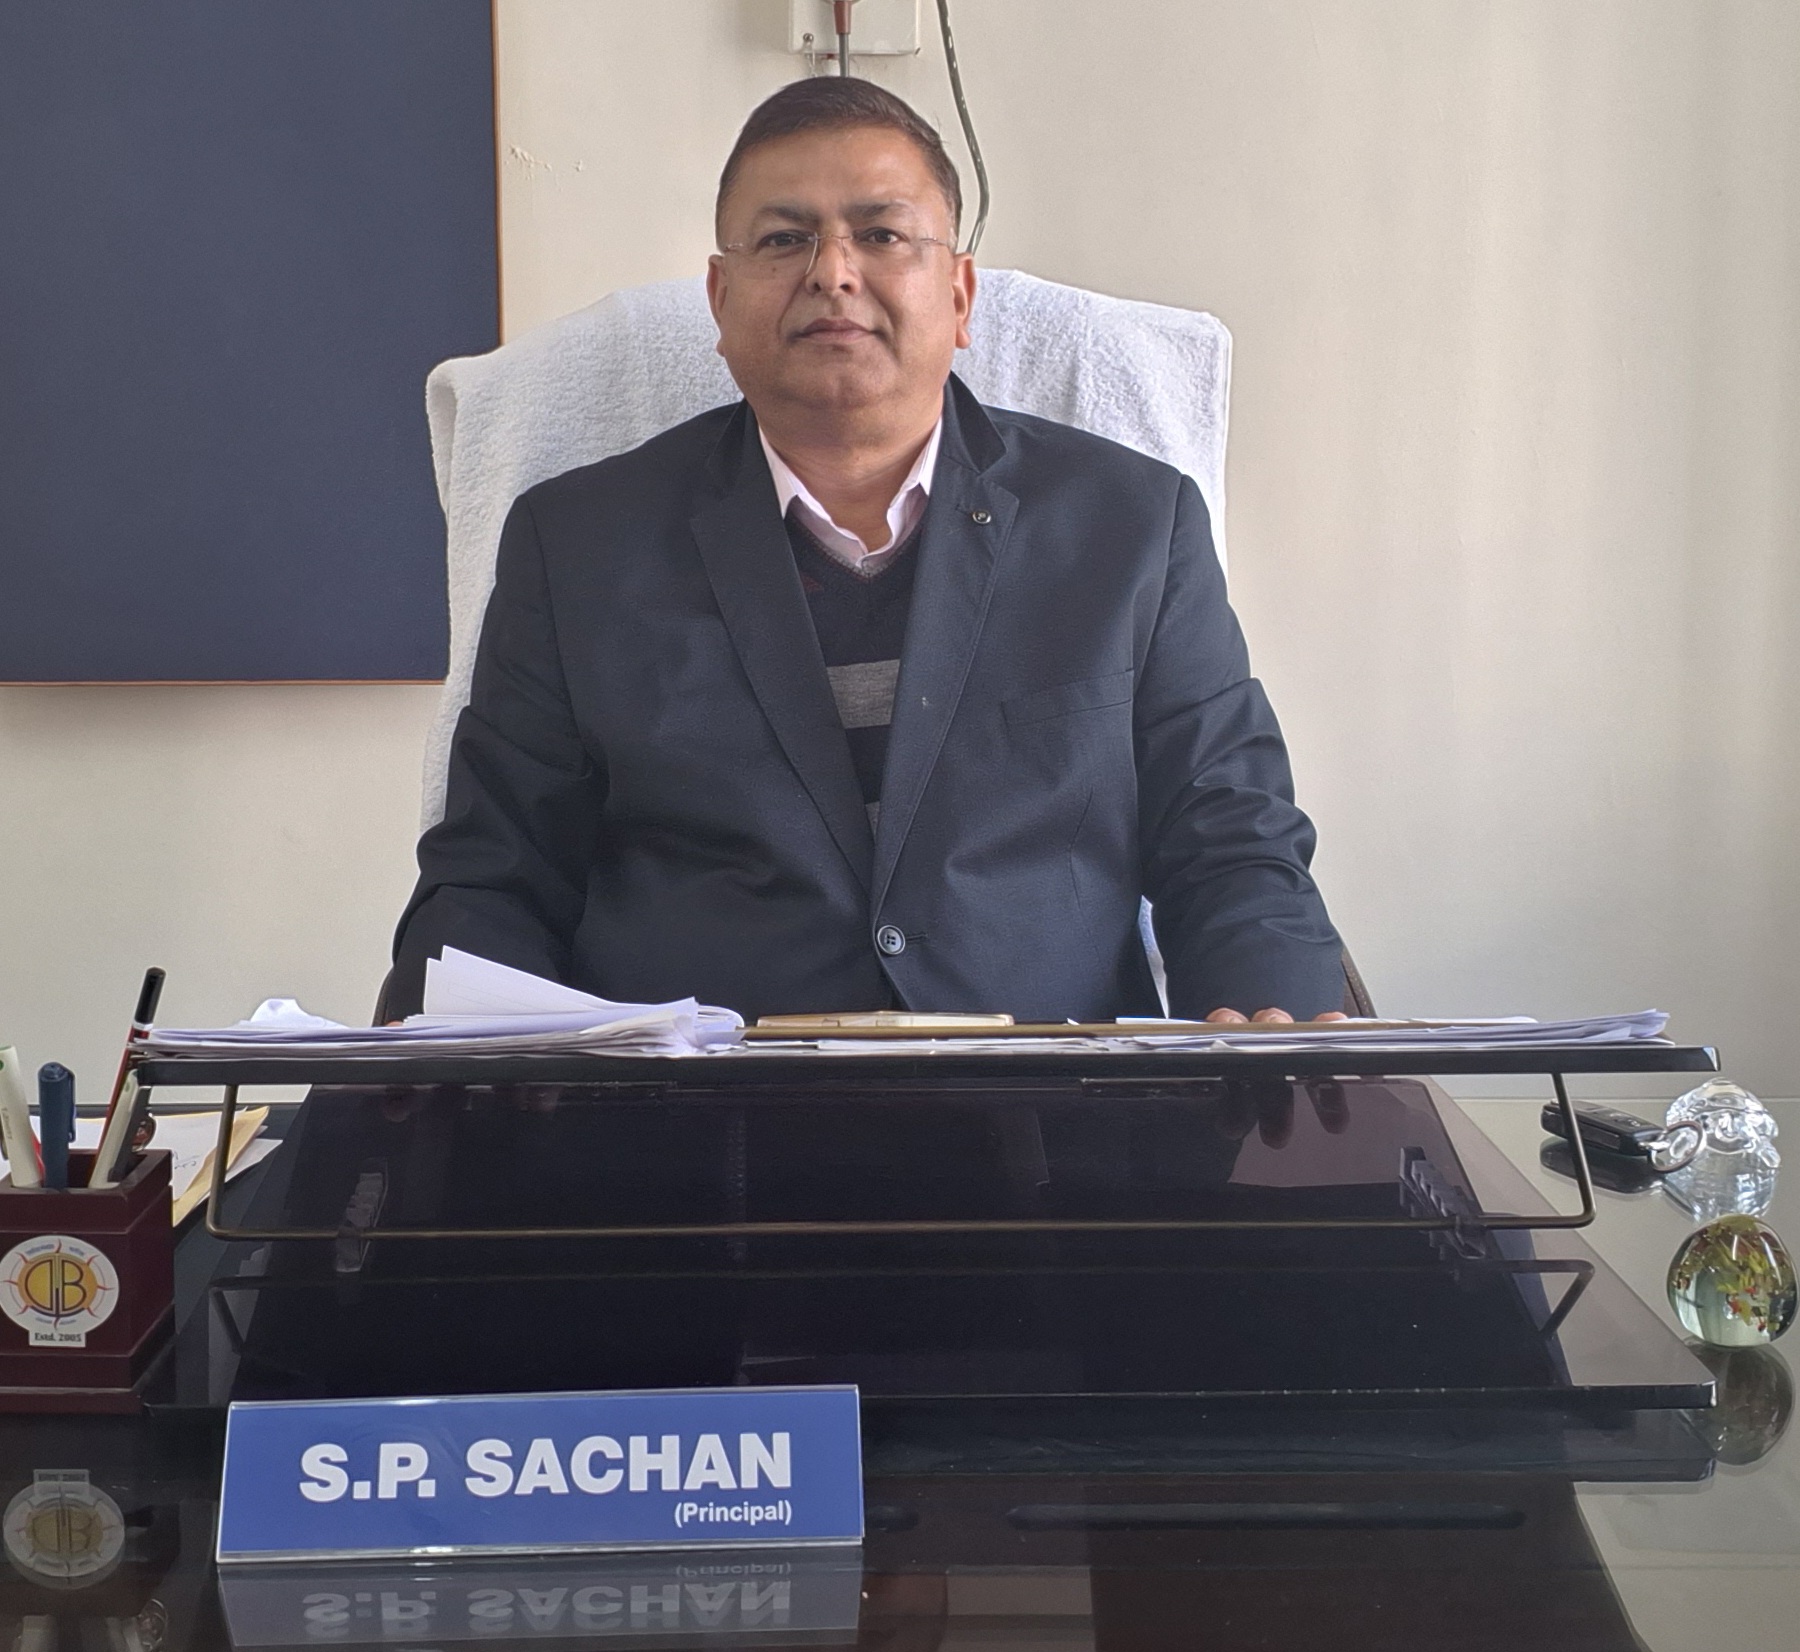 Shri S.P. Sachan